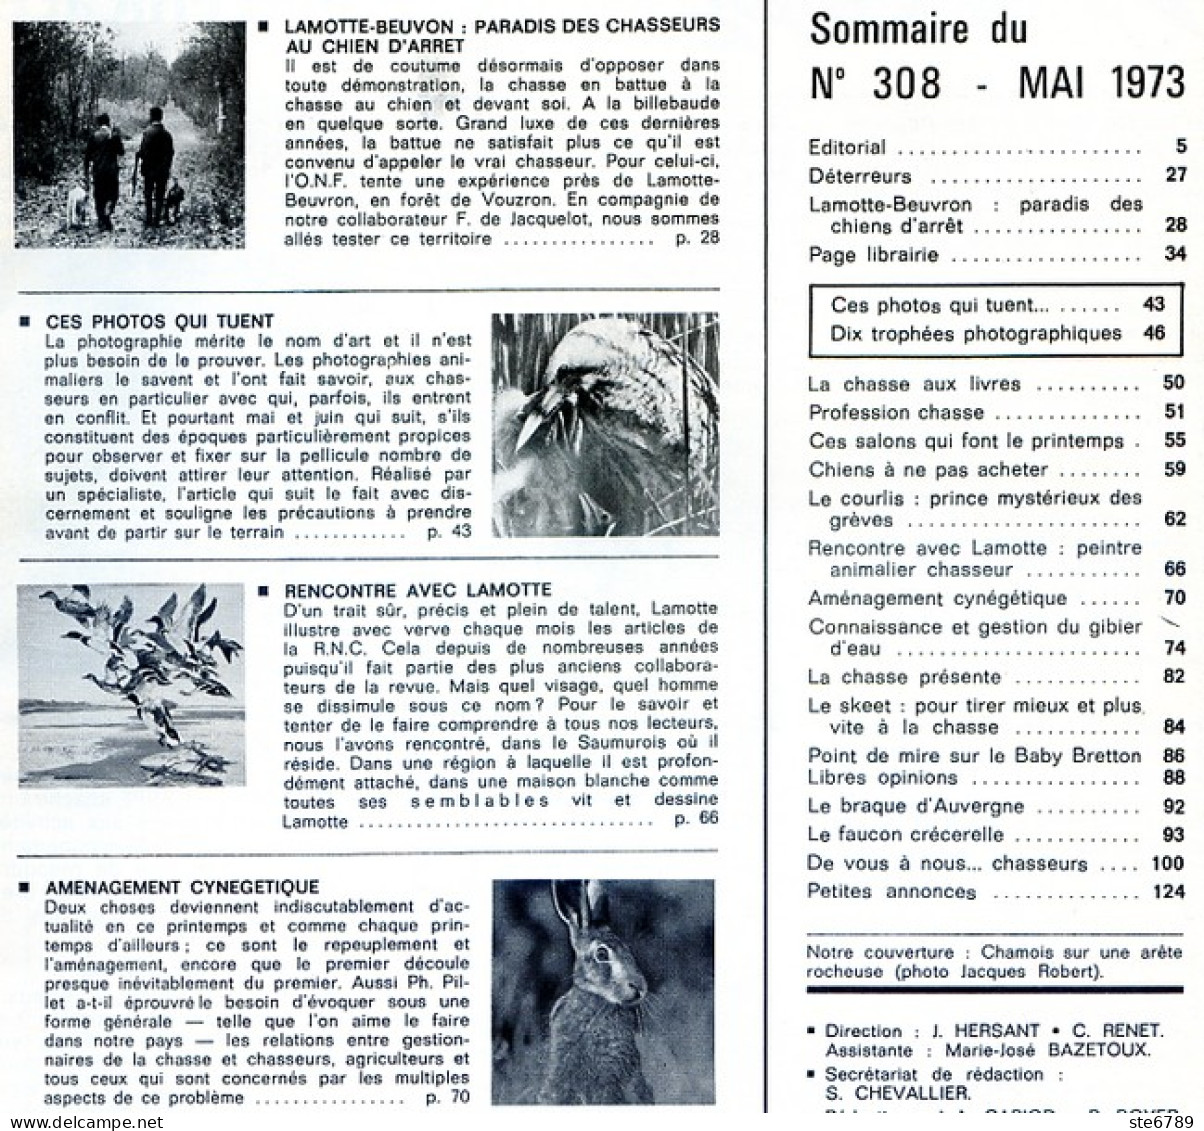 La Revue Nationale De LA CHASSE N° 308 Mai 1973 Lamotte Beuvon , Chasse Photo - Fischen + Jagen